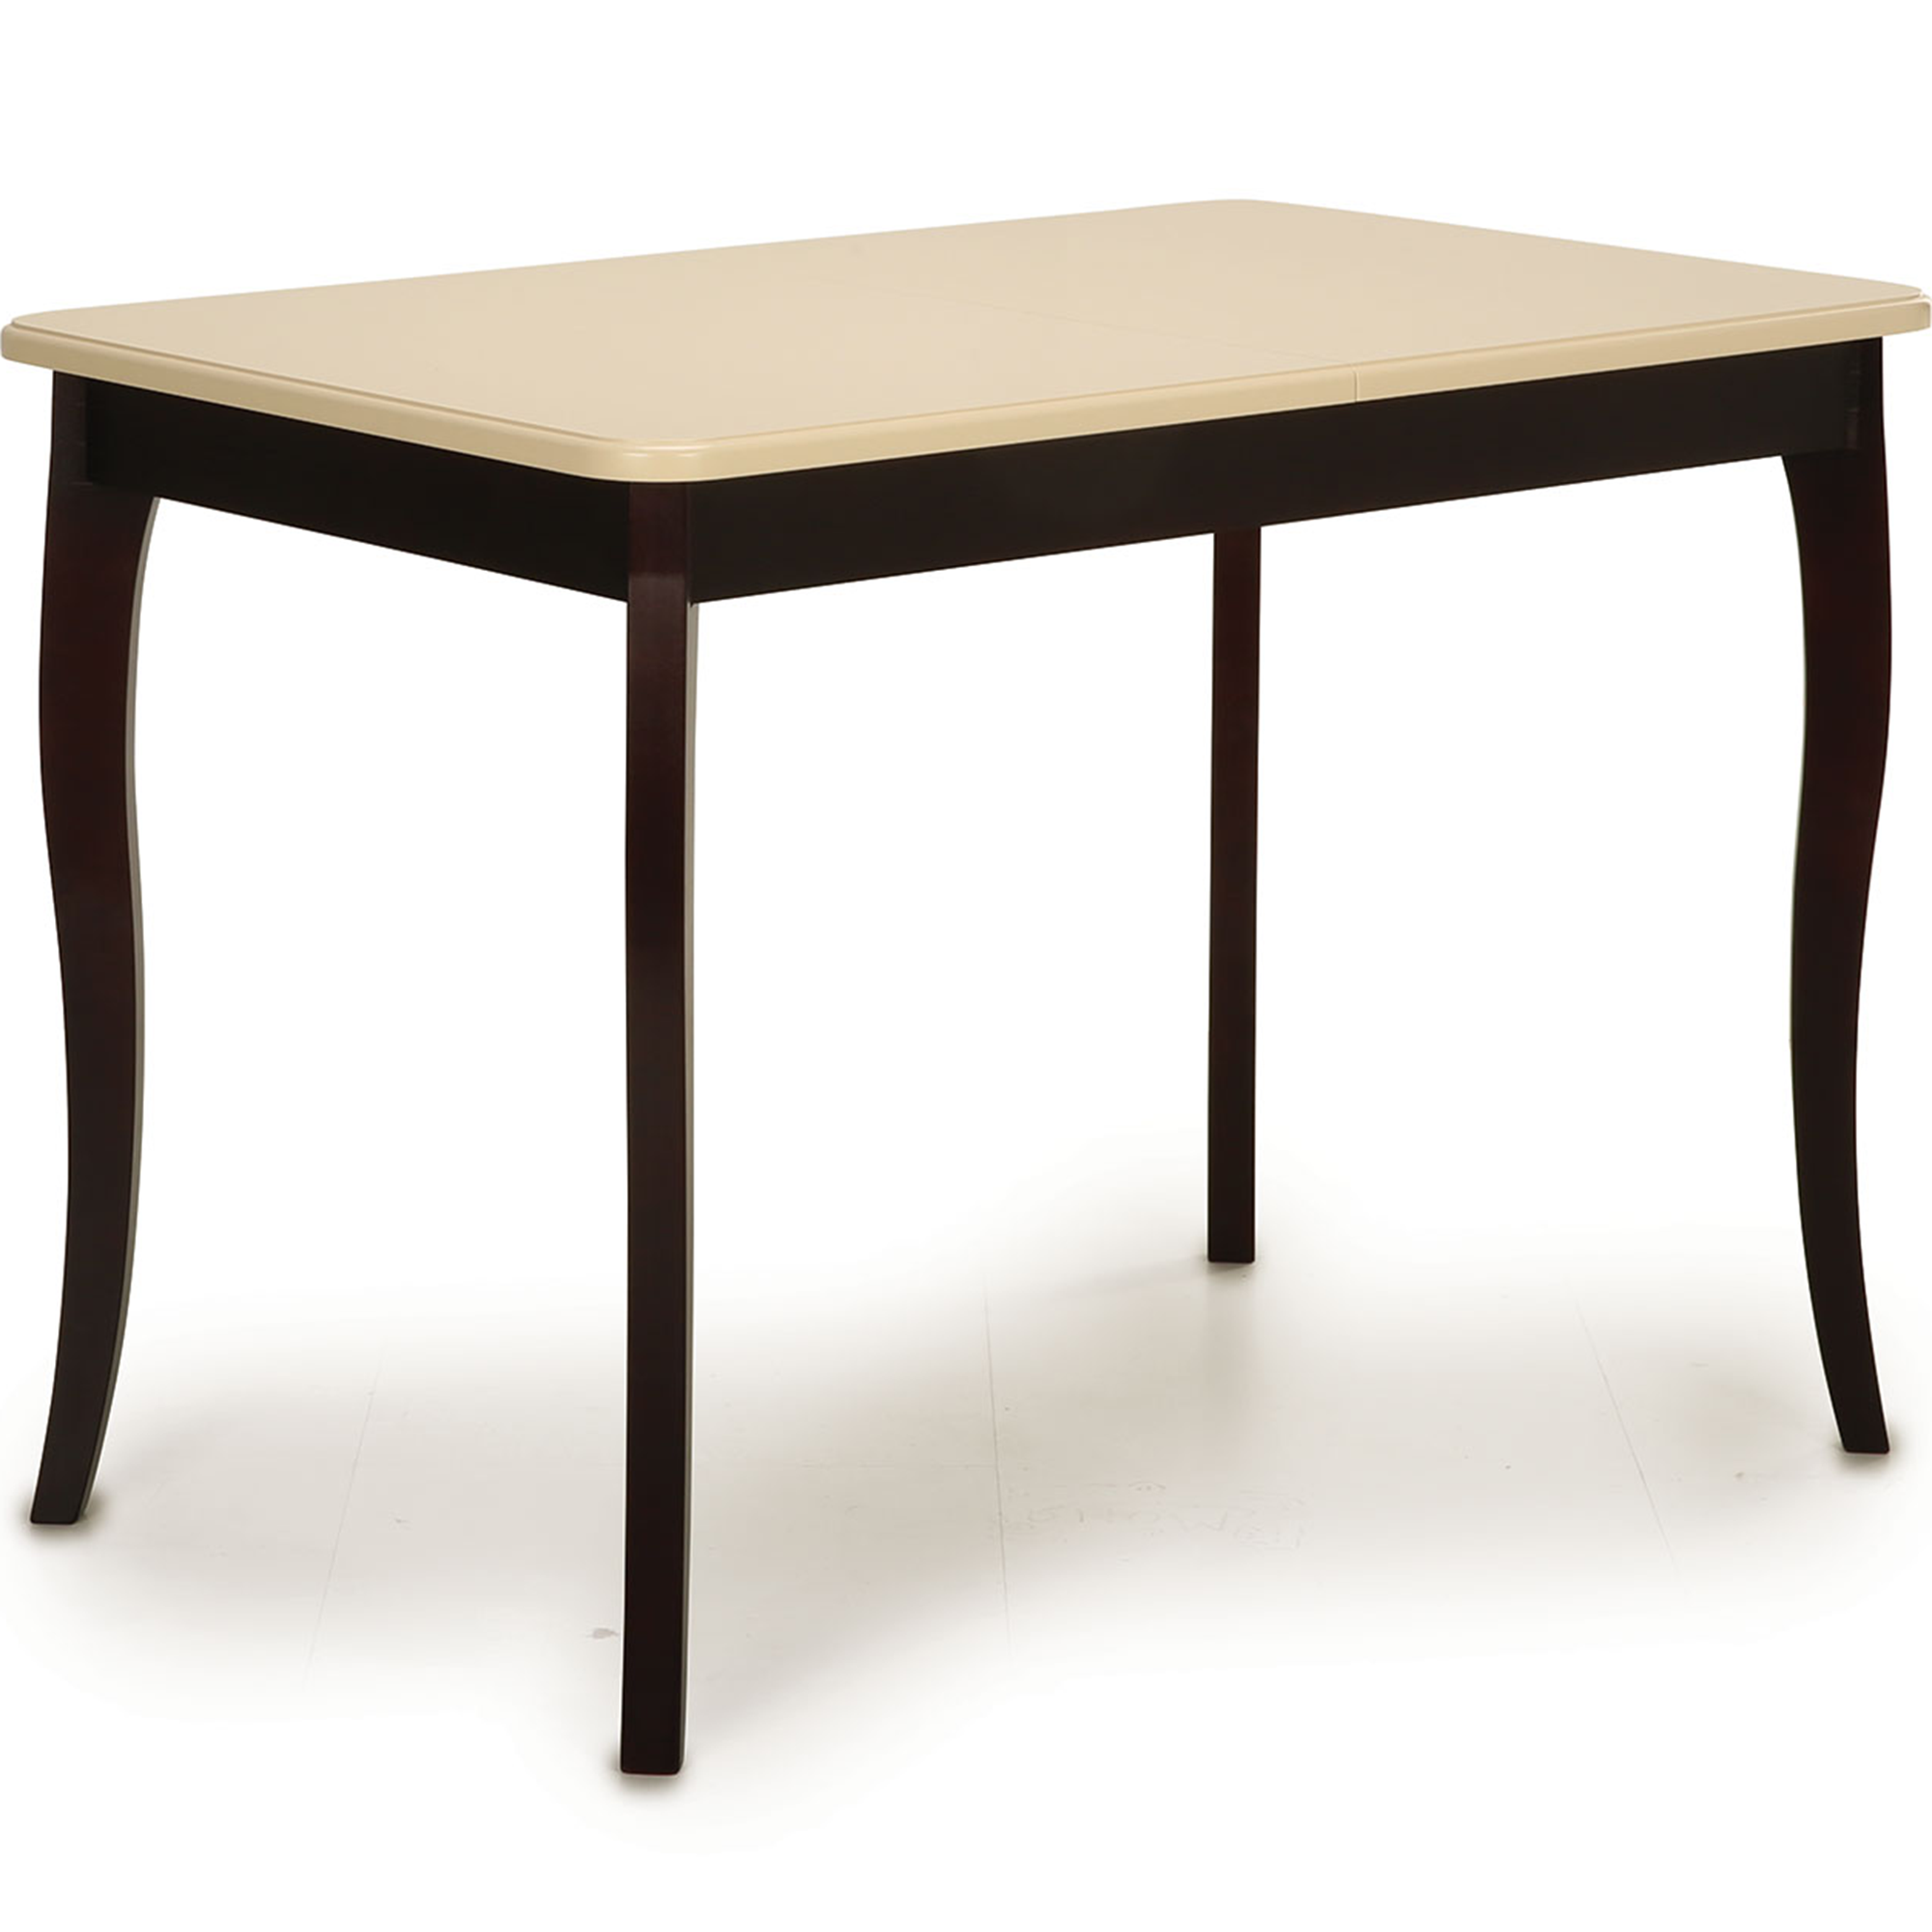 90938819 Кухонный стол прямоугольный 108x68 см массив цвет кремовый Блюз STLM-0424952 BELELI